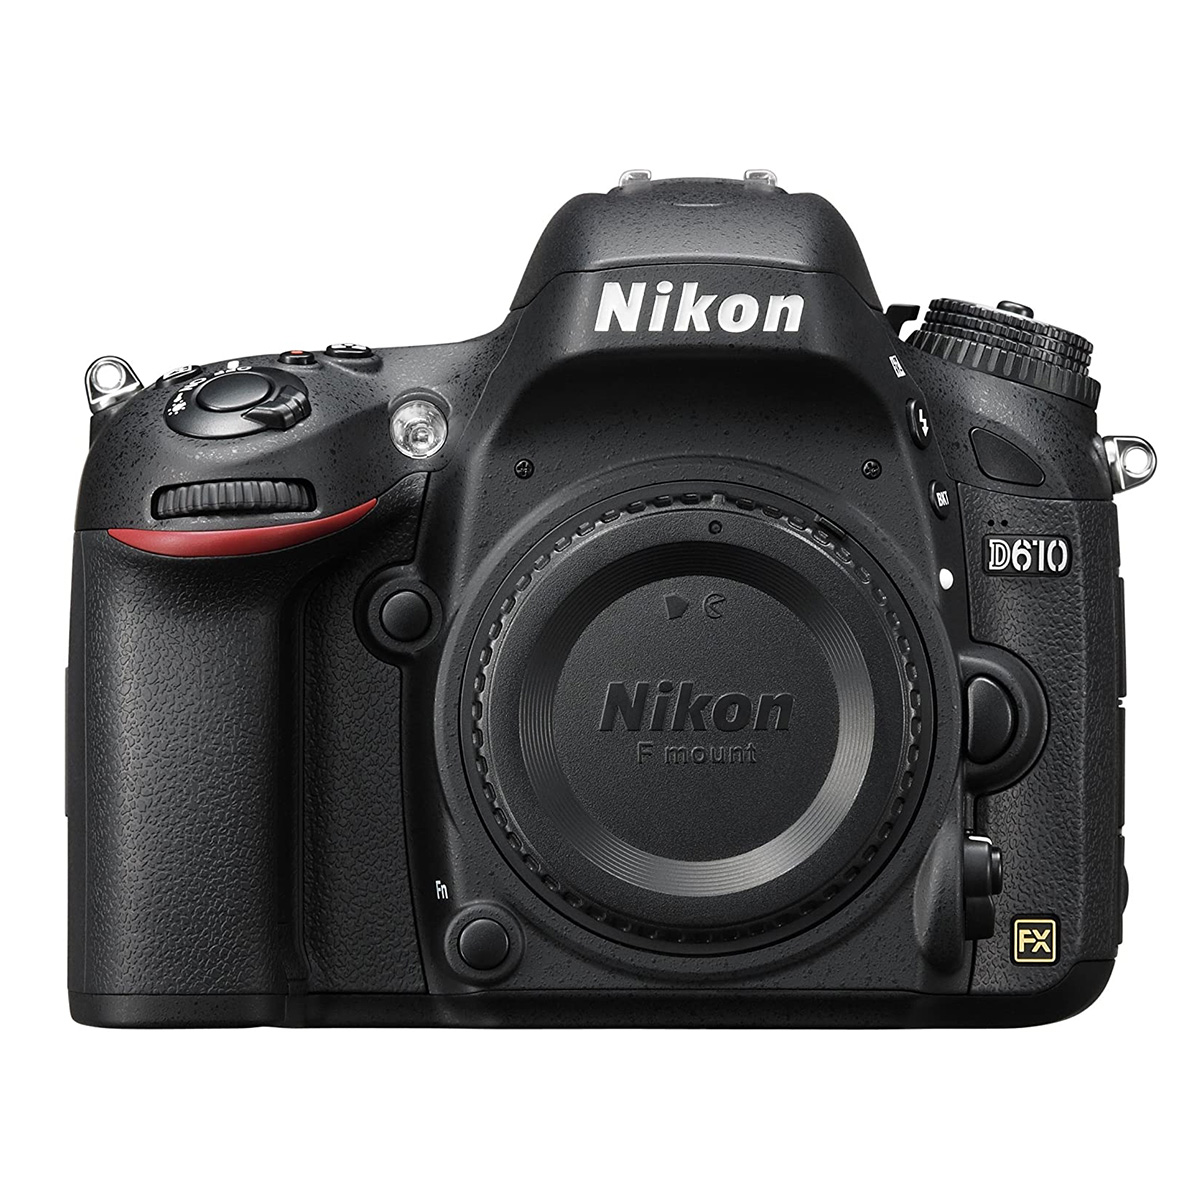 Nikon D610 défiltré partiel LPF-1 pour l'astrophoto